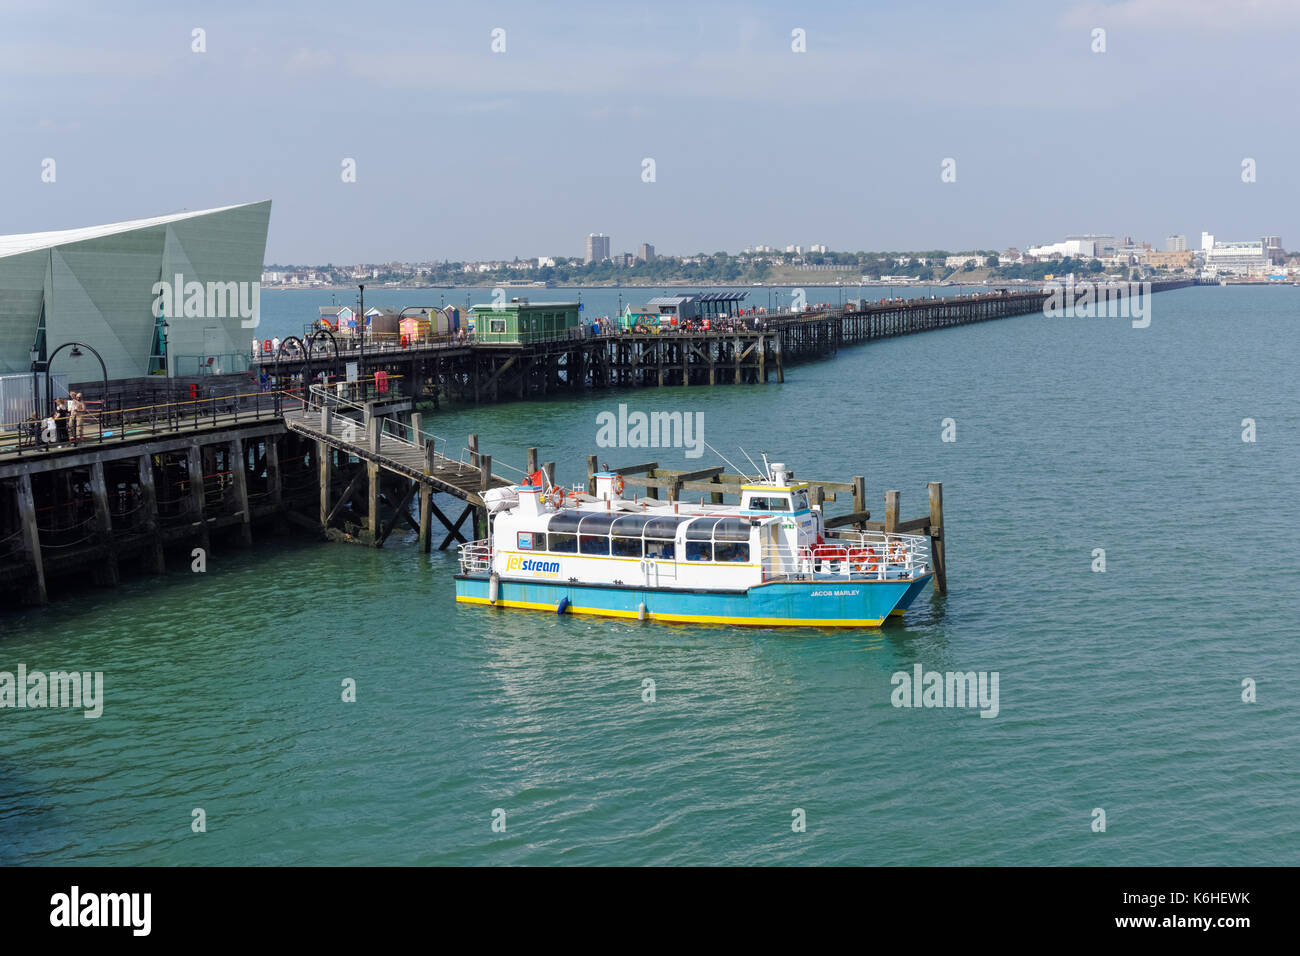 Southend Pier, Southend-on-Sea, Essex, England, United Kingdom, UK Stock Photo